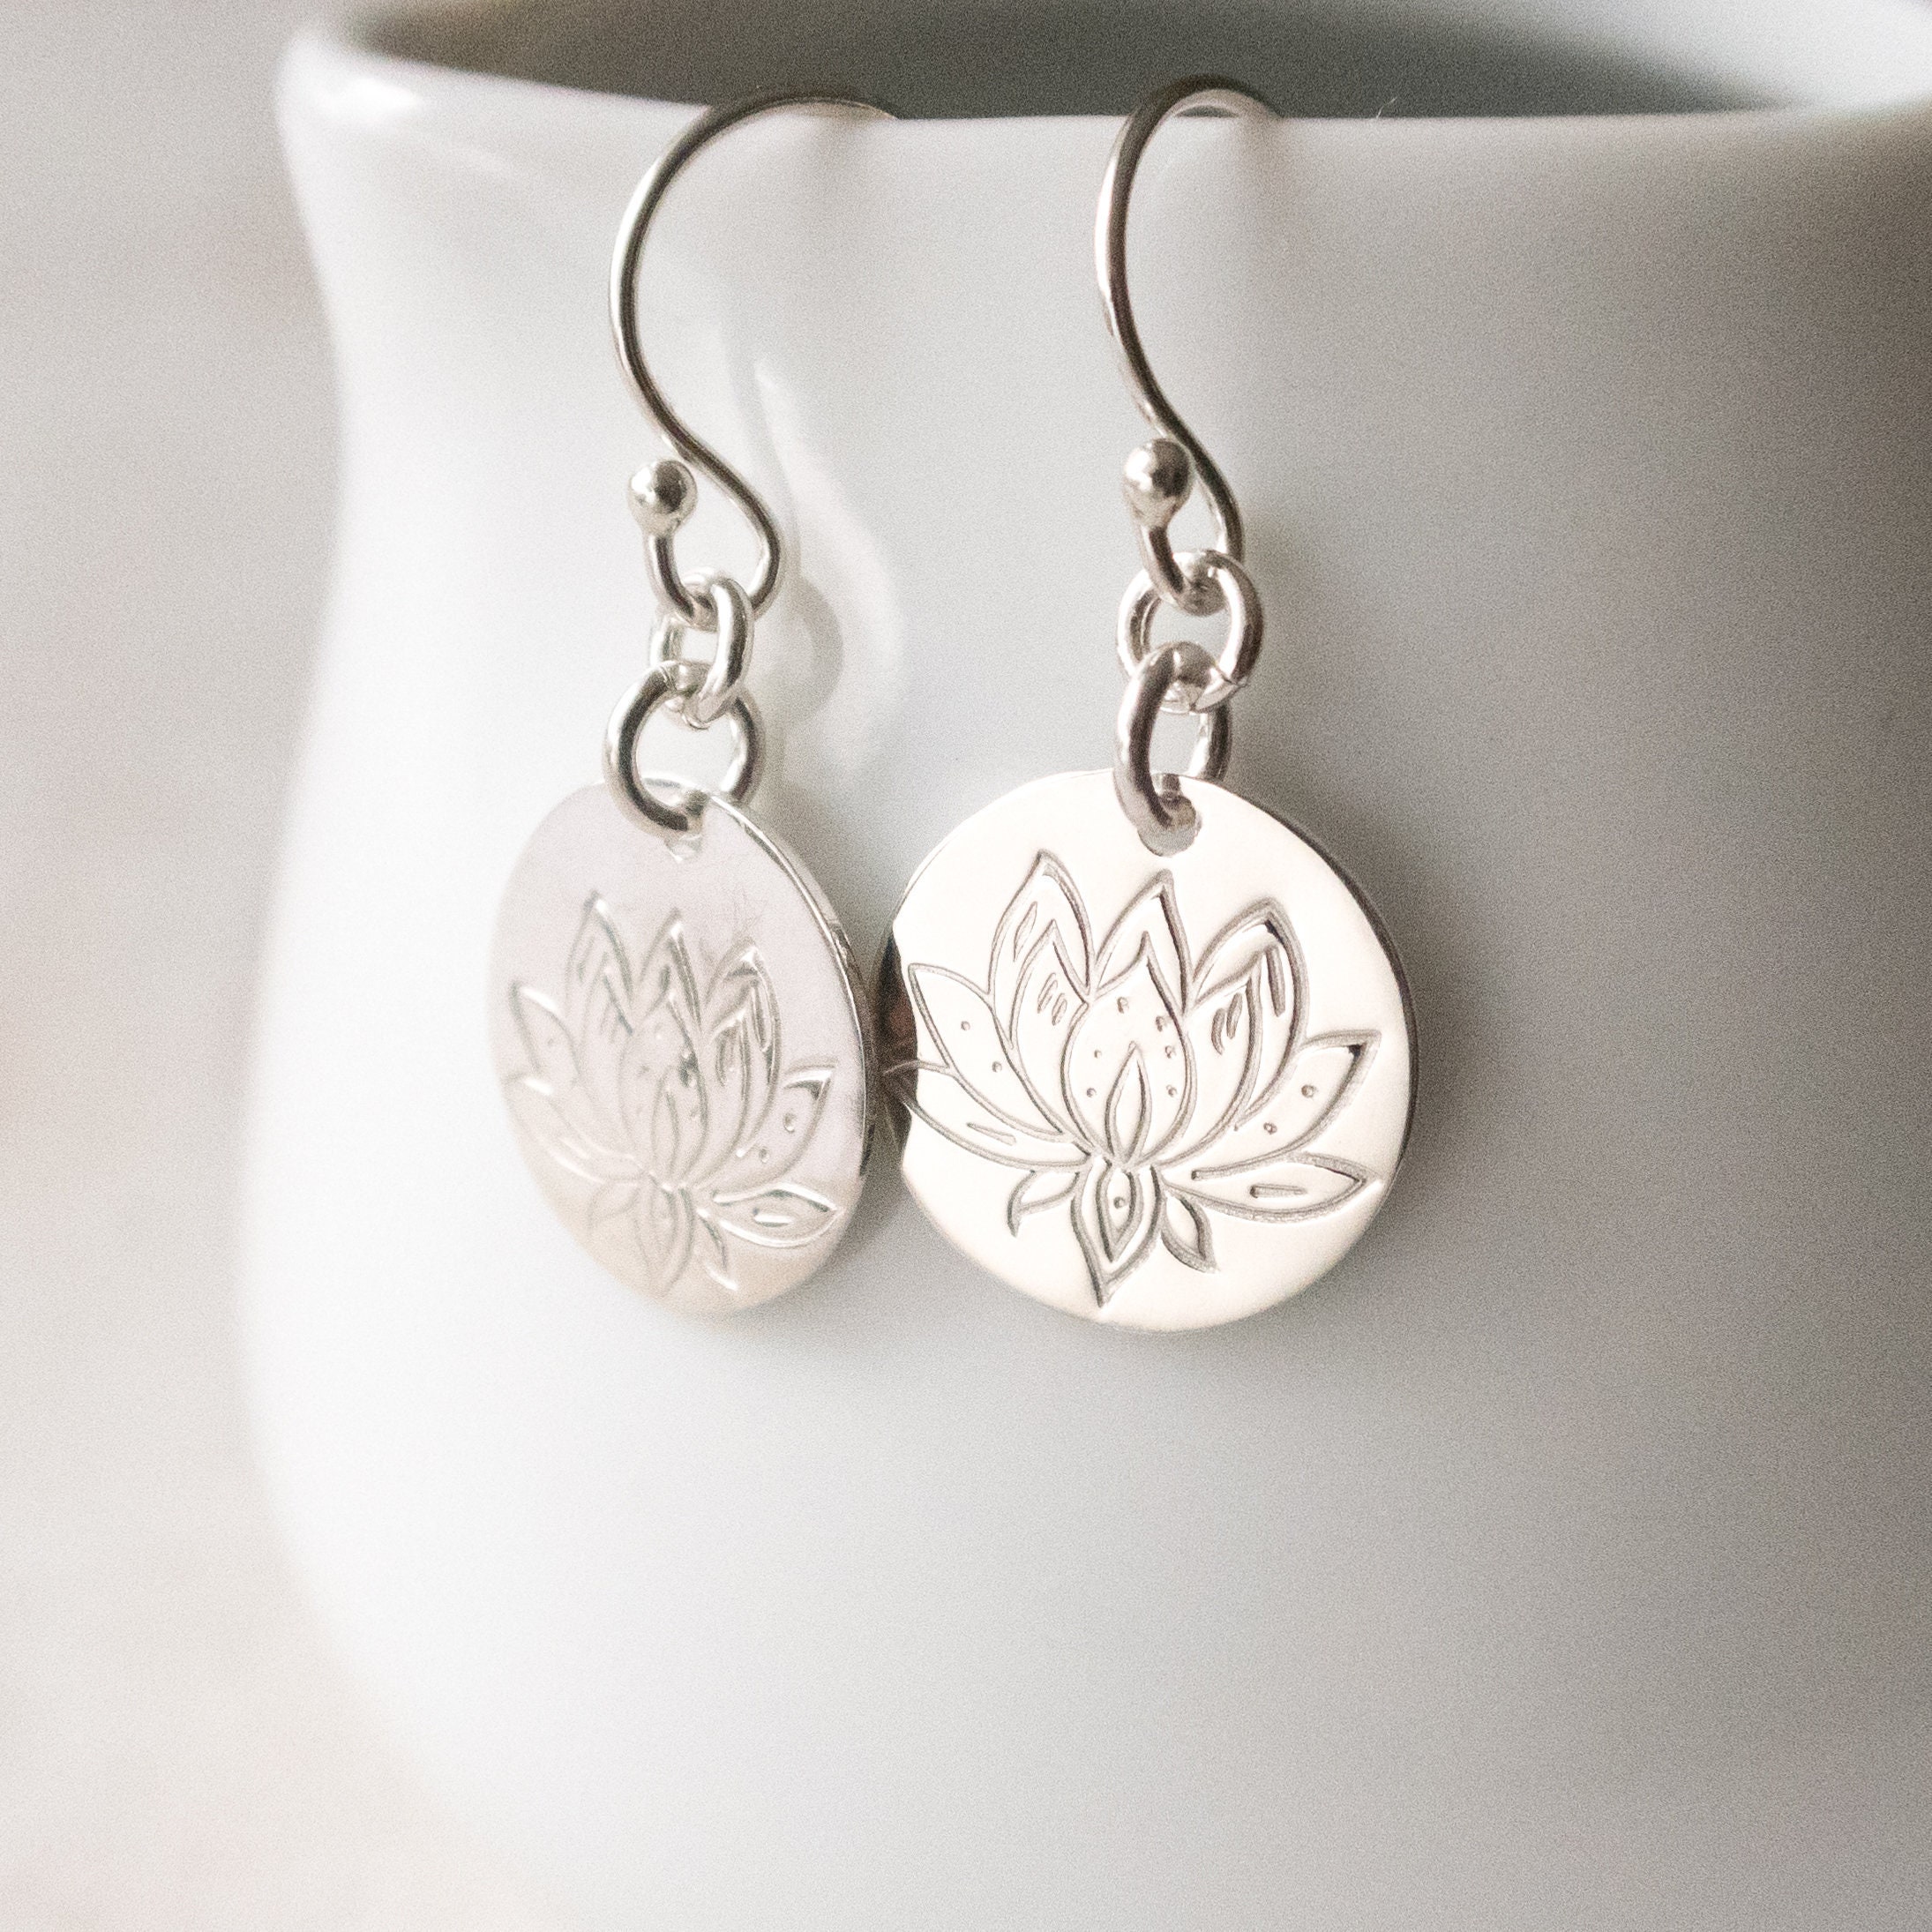 Lotus Flower Earrings, Sterling Silver, Dangle Earrings